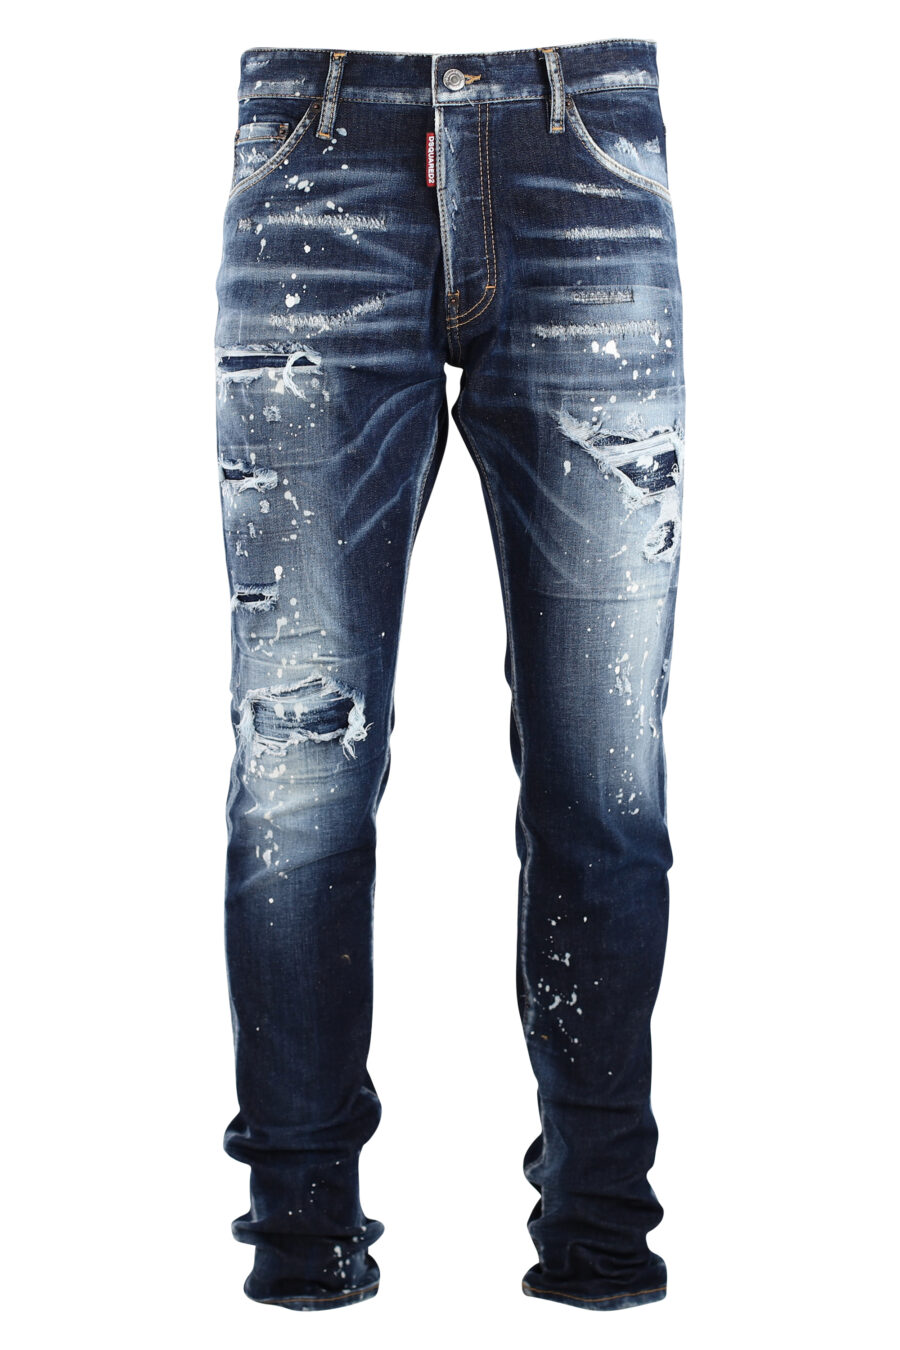 Coole Jeanshose, blau, mit weißer Farbe und Rissen - IMG 7541